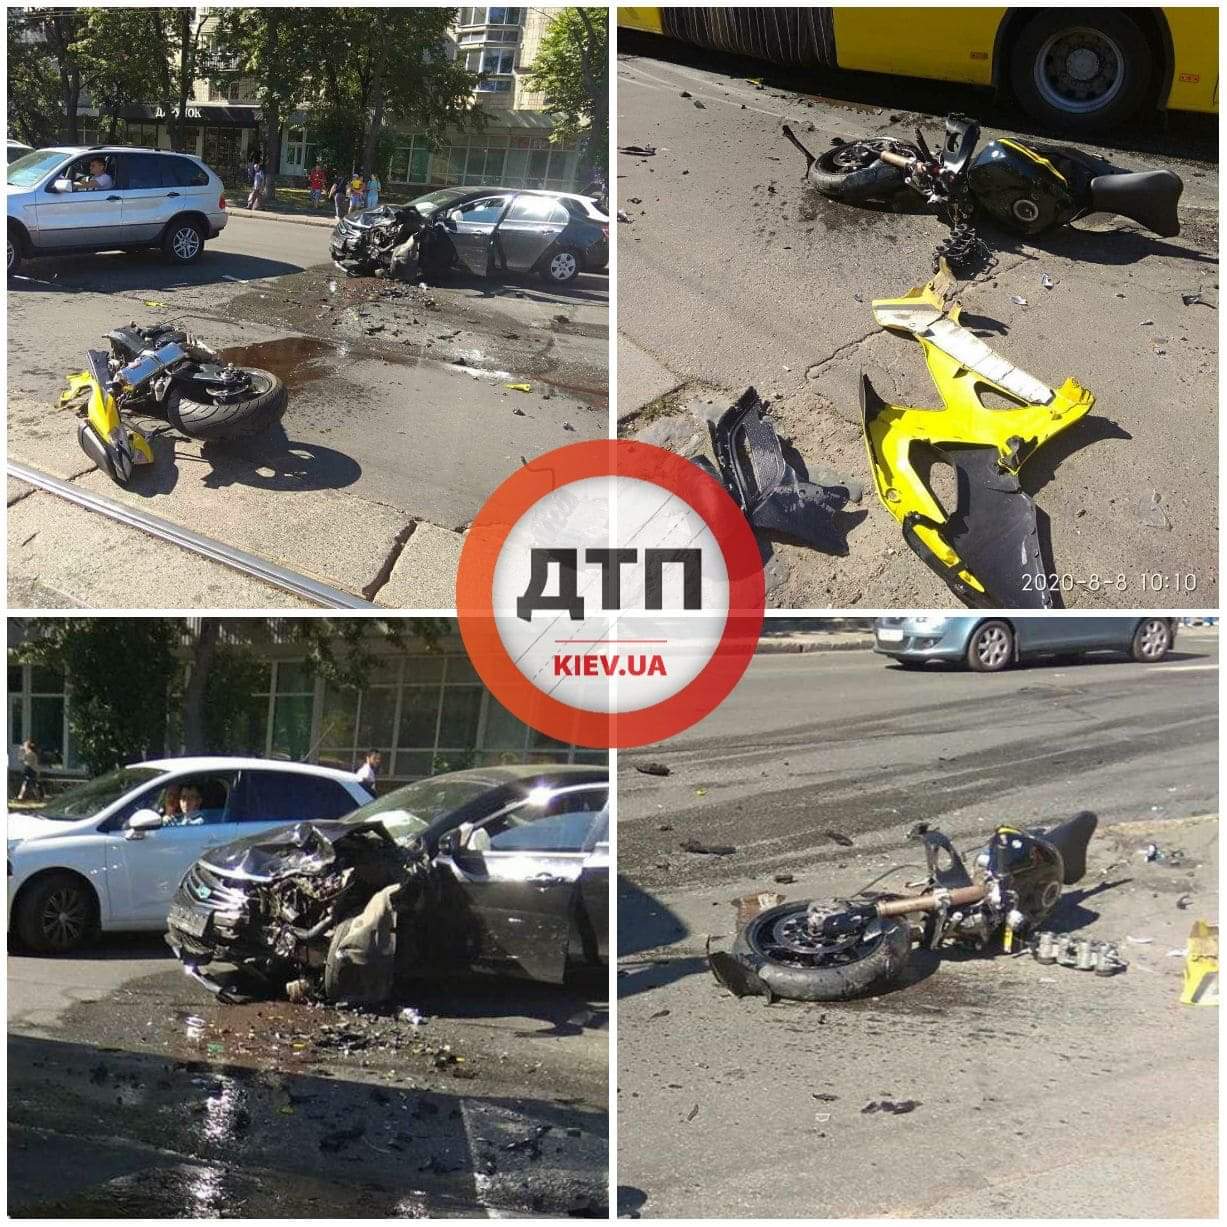 В Киеве на Кирилловской произошло серьезное ДТП - мотоцикл врезался в автомобиль: байк разорвало на части, пилот в тяжёлом состоянии